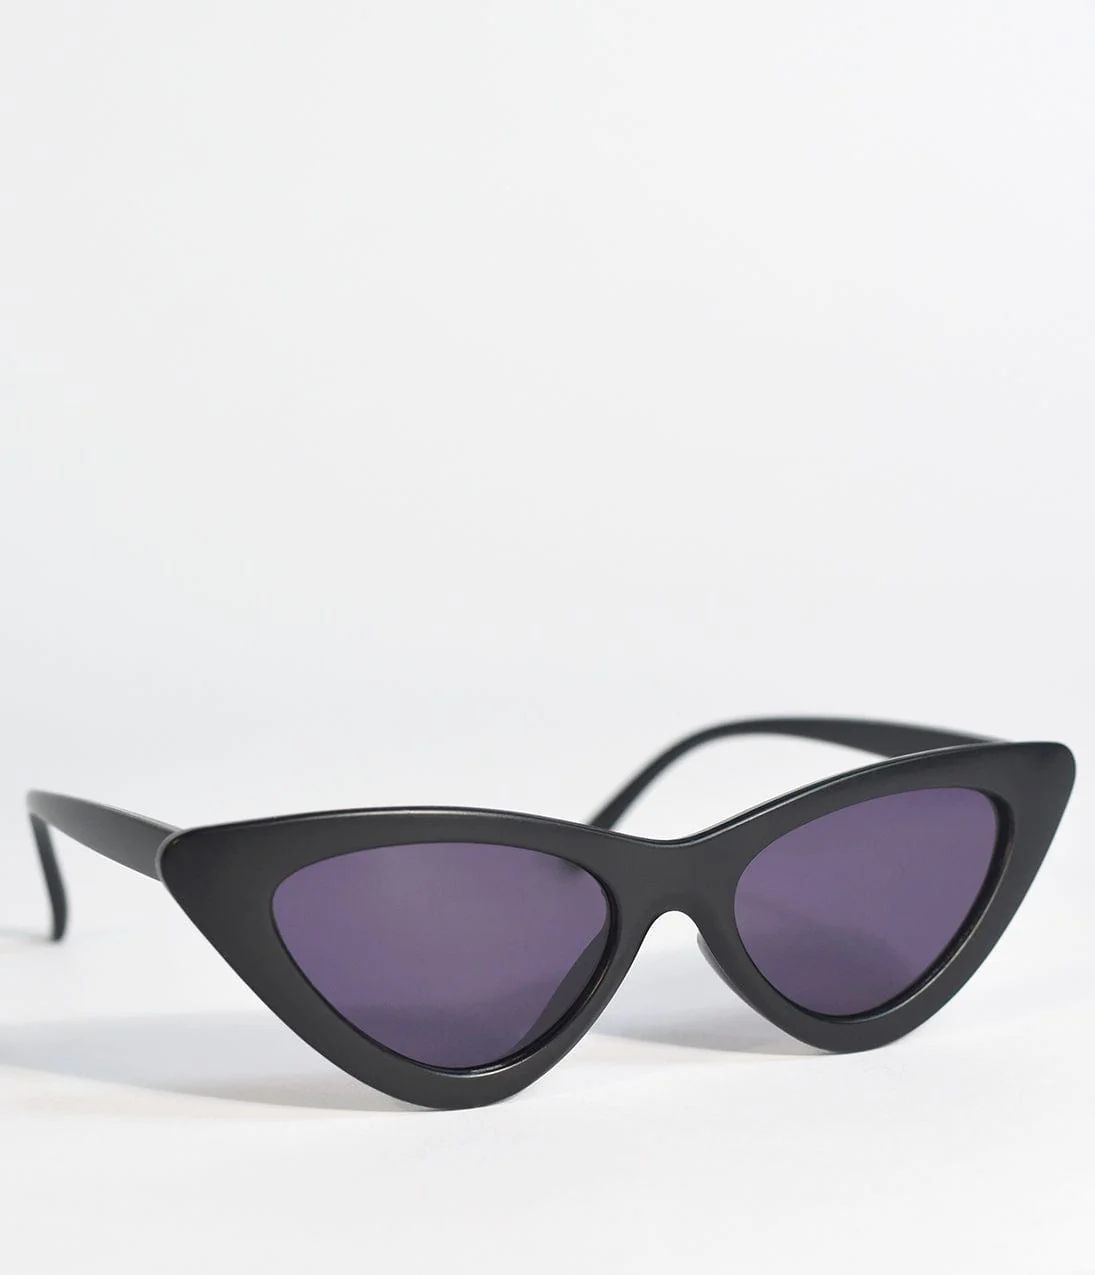 Classic Black Retro Cat Eye Sunglasses | UniqueVintage